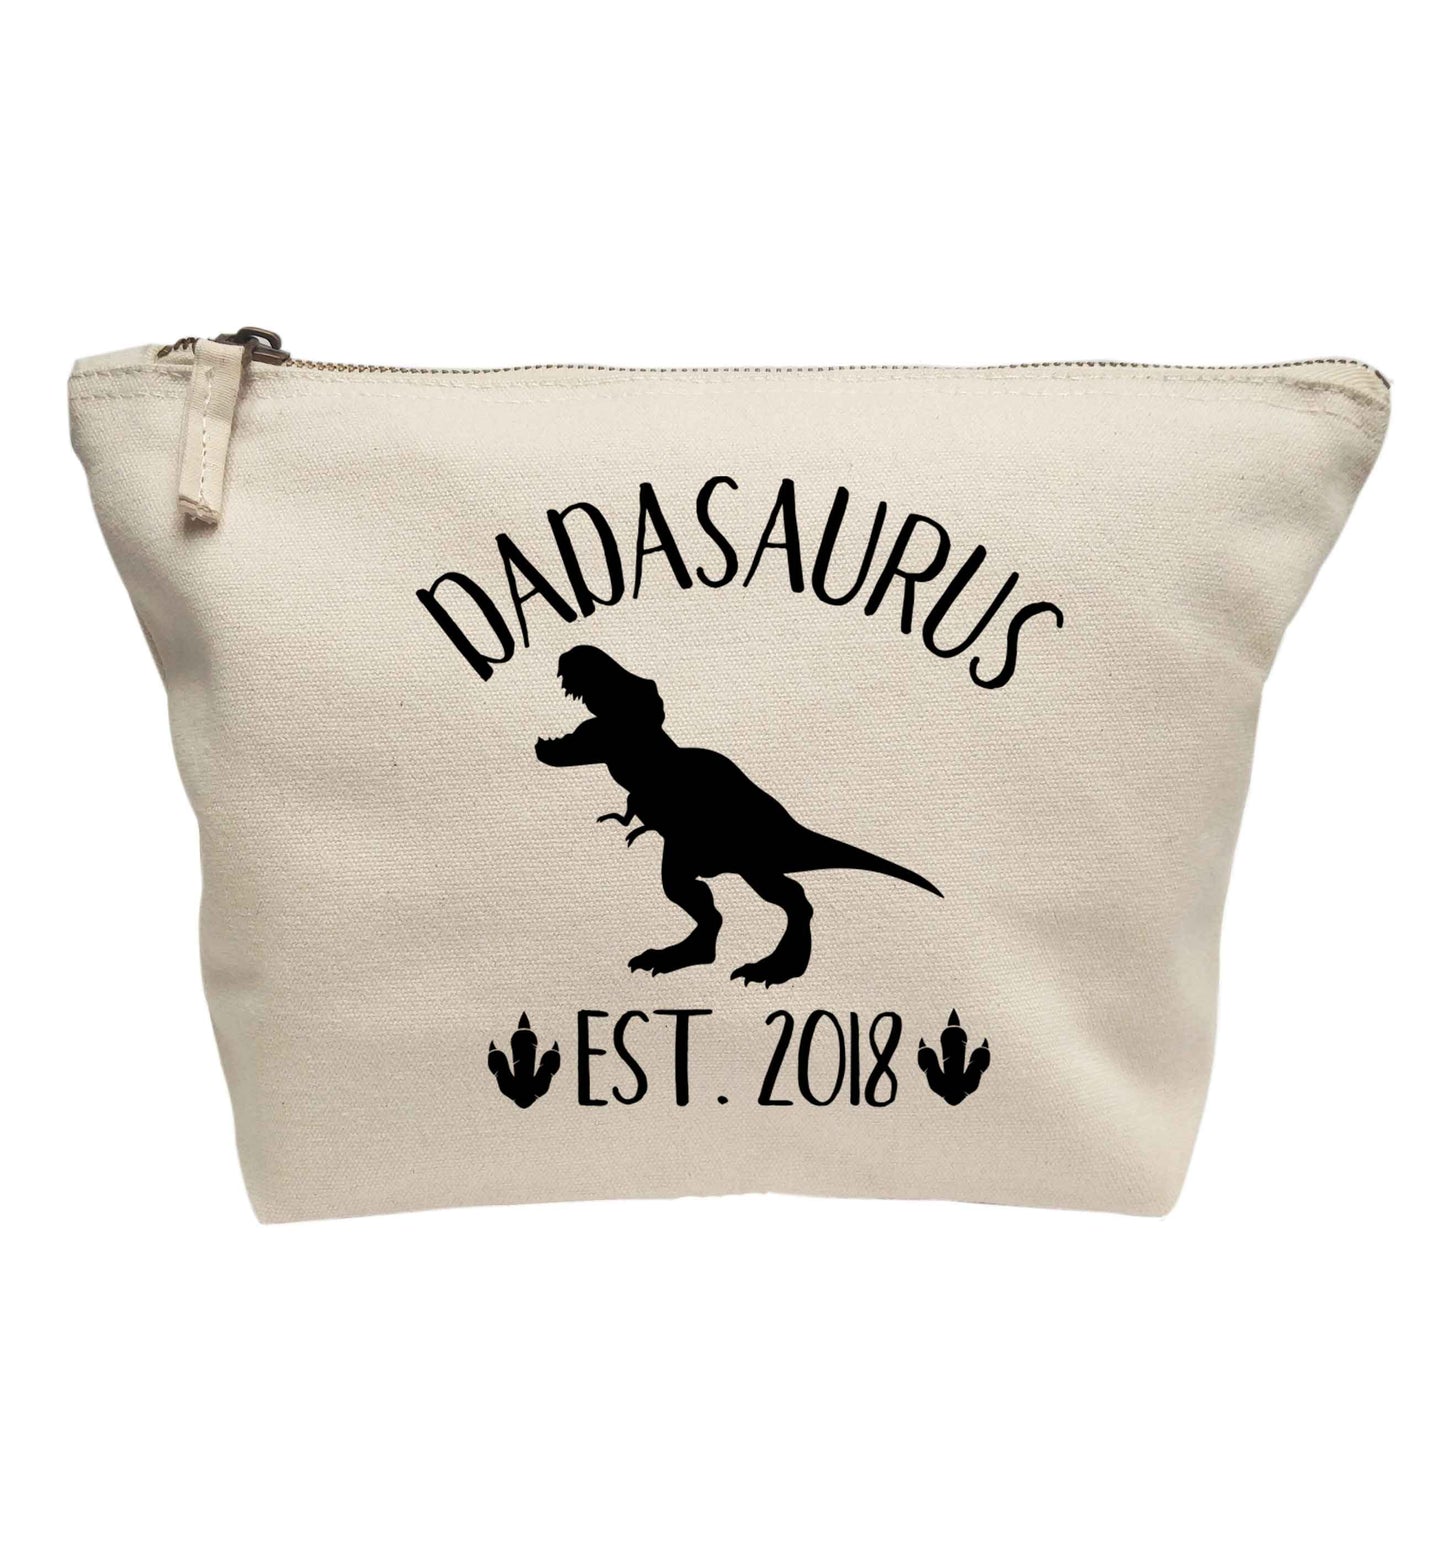 Personalised dadasaurus since (custom date) | makeup / wash bag